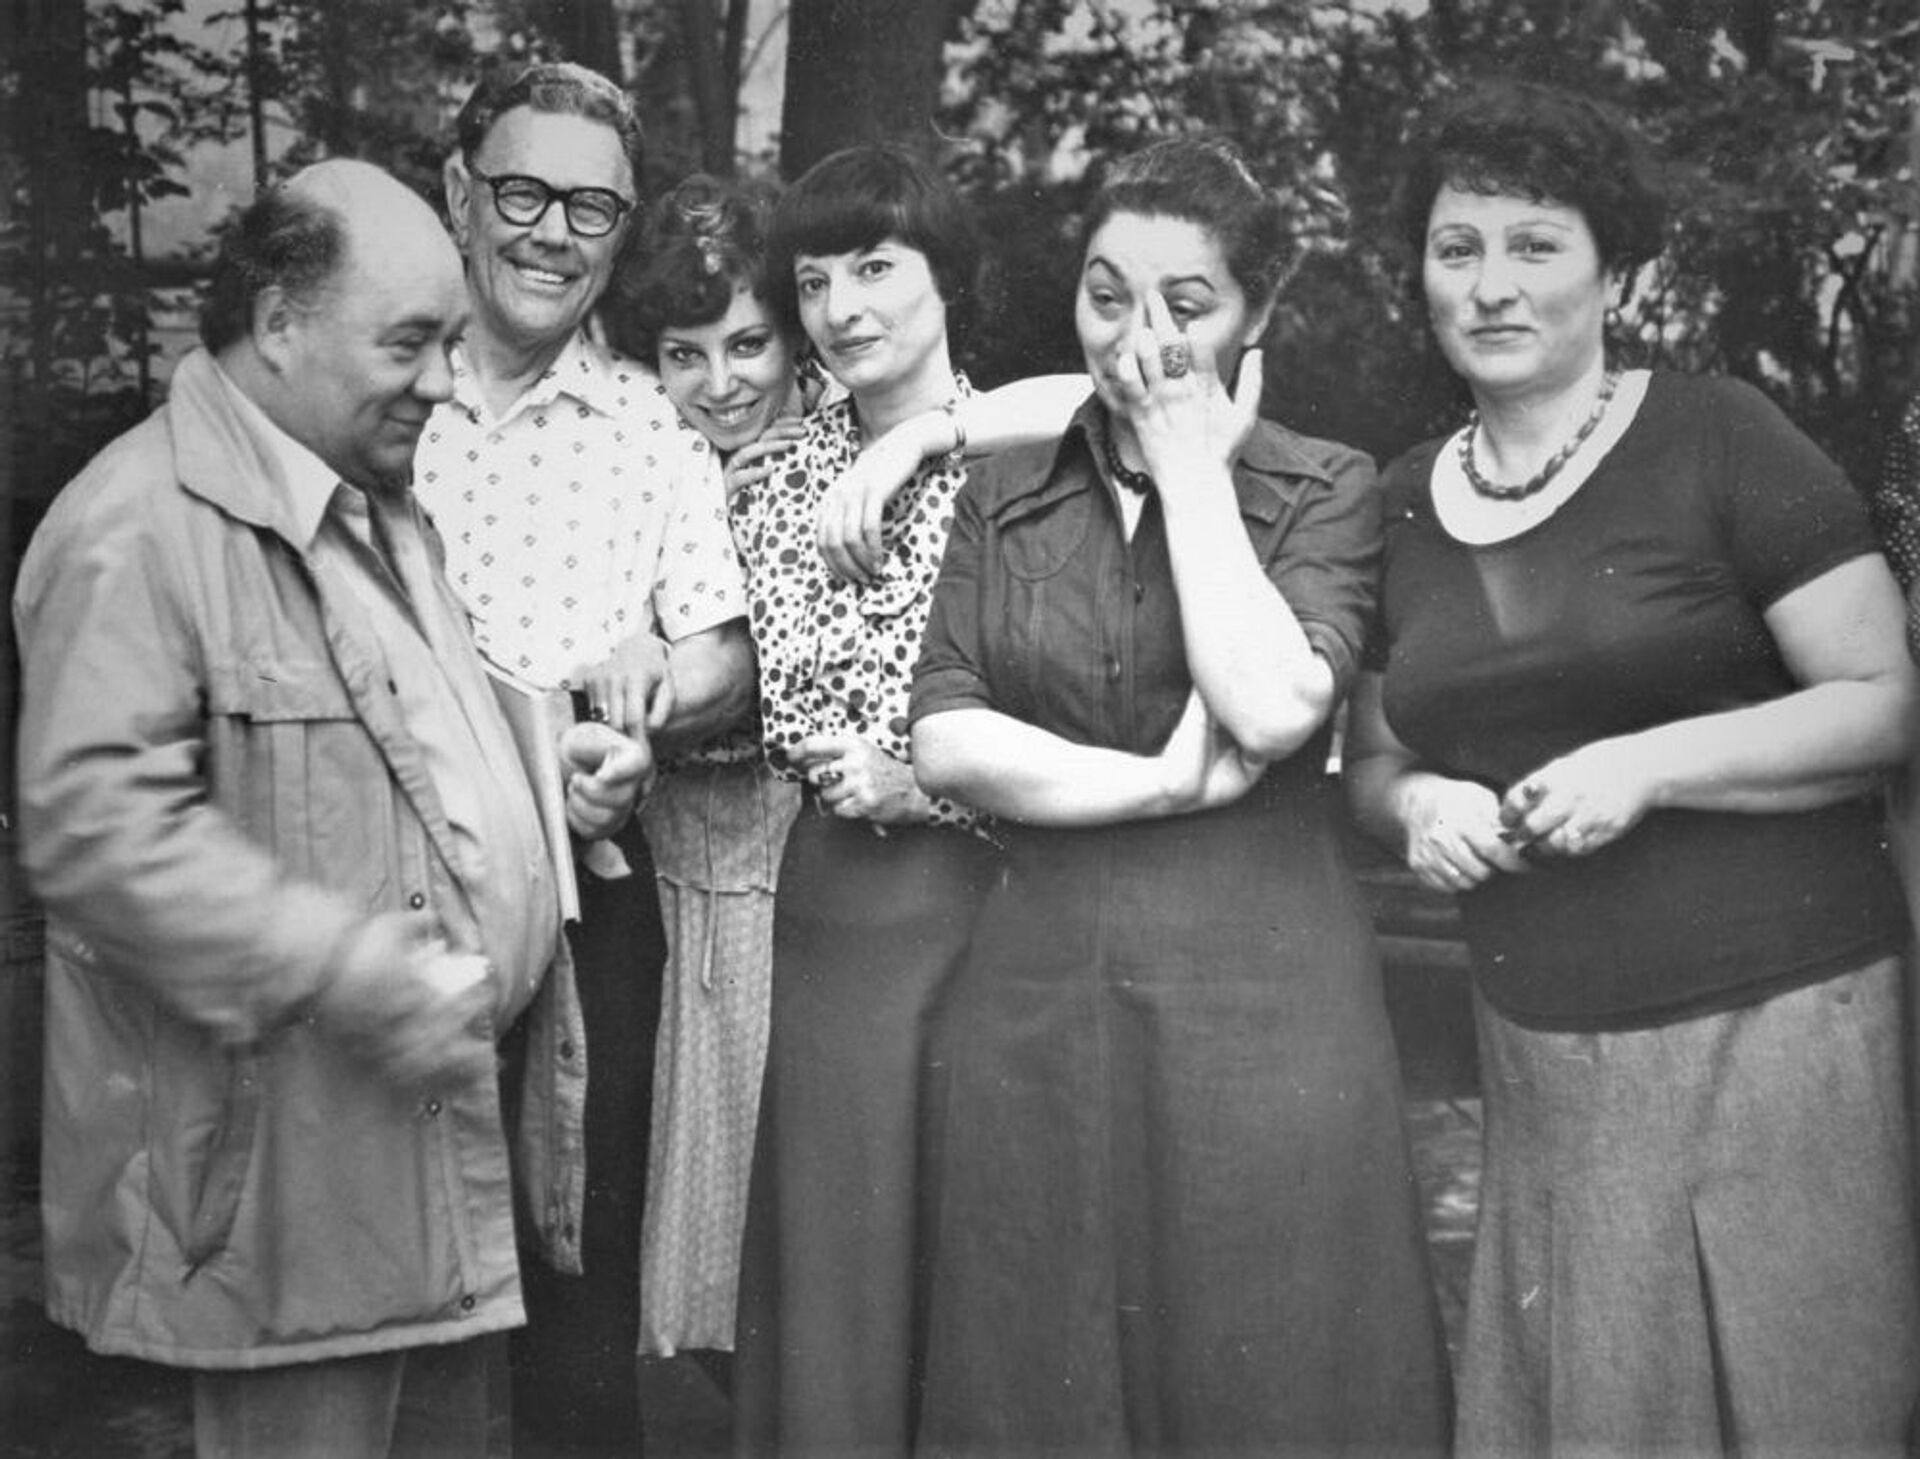 ირინა ძუცოვა მსახიობ ევგენი ლეონოვთან და კოლეგებთან ერთად - Sputnik საქართველო, 1920, 24.08.2021